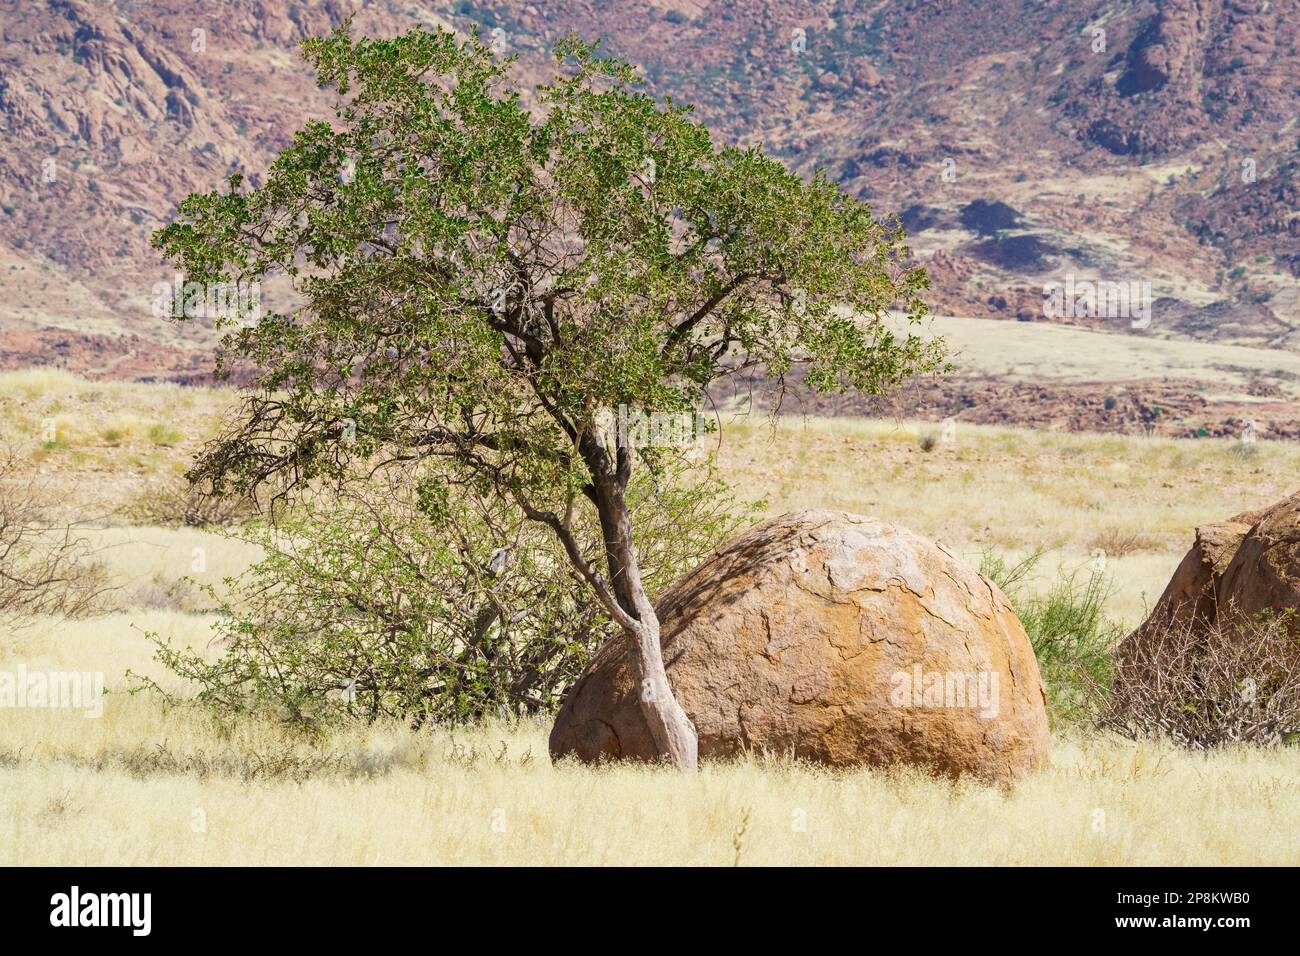 L'albero del pastore verde cresce accanto alla roccia rotonda arancione. La prateria circonda il masso e l'albero. Damaraland, Namibia, Africa Foto Stock